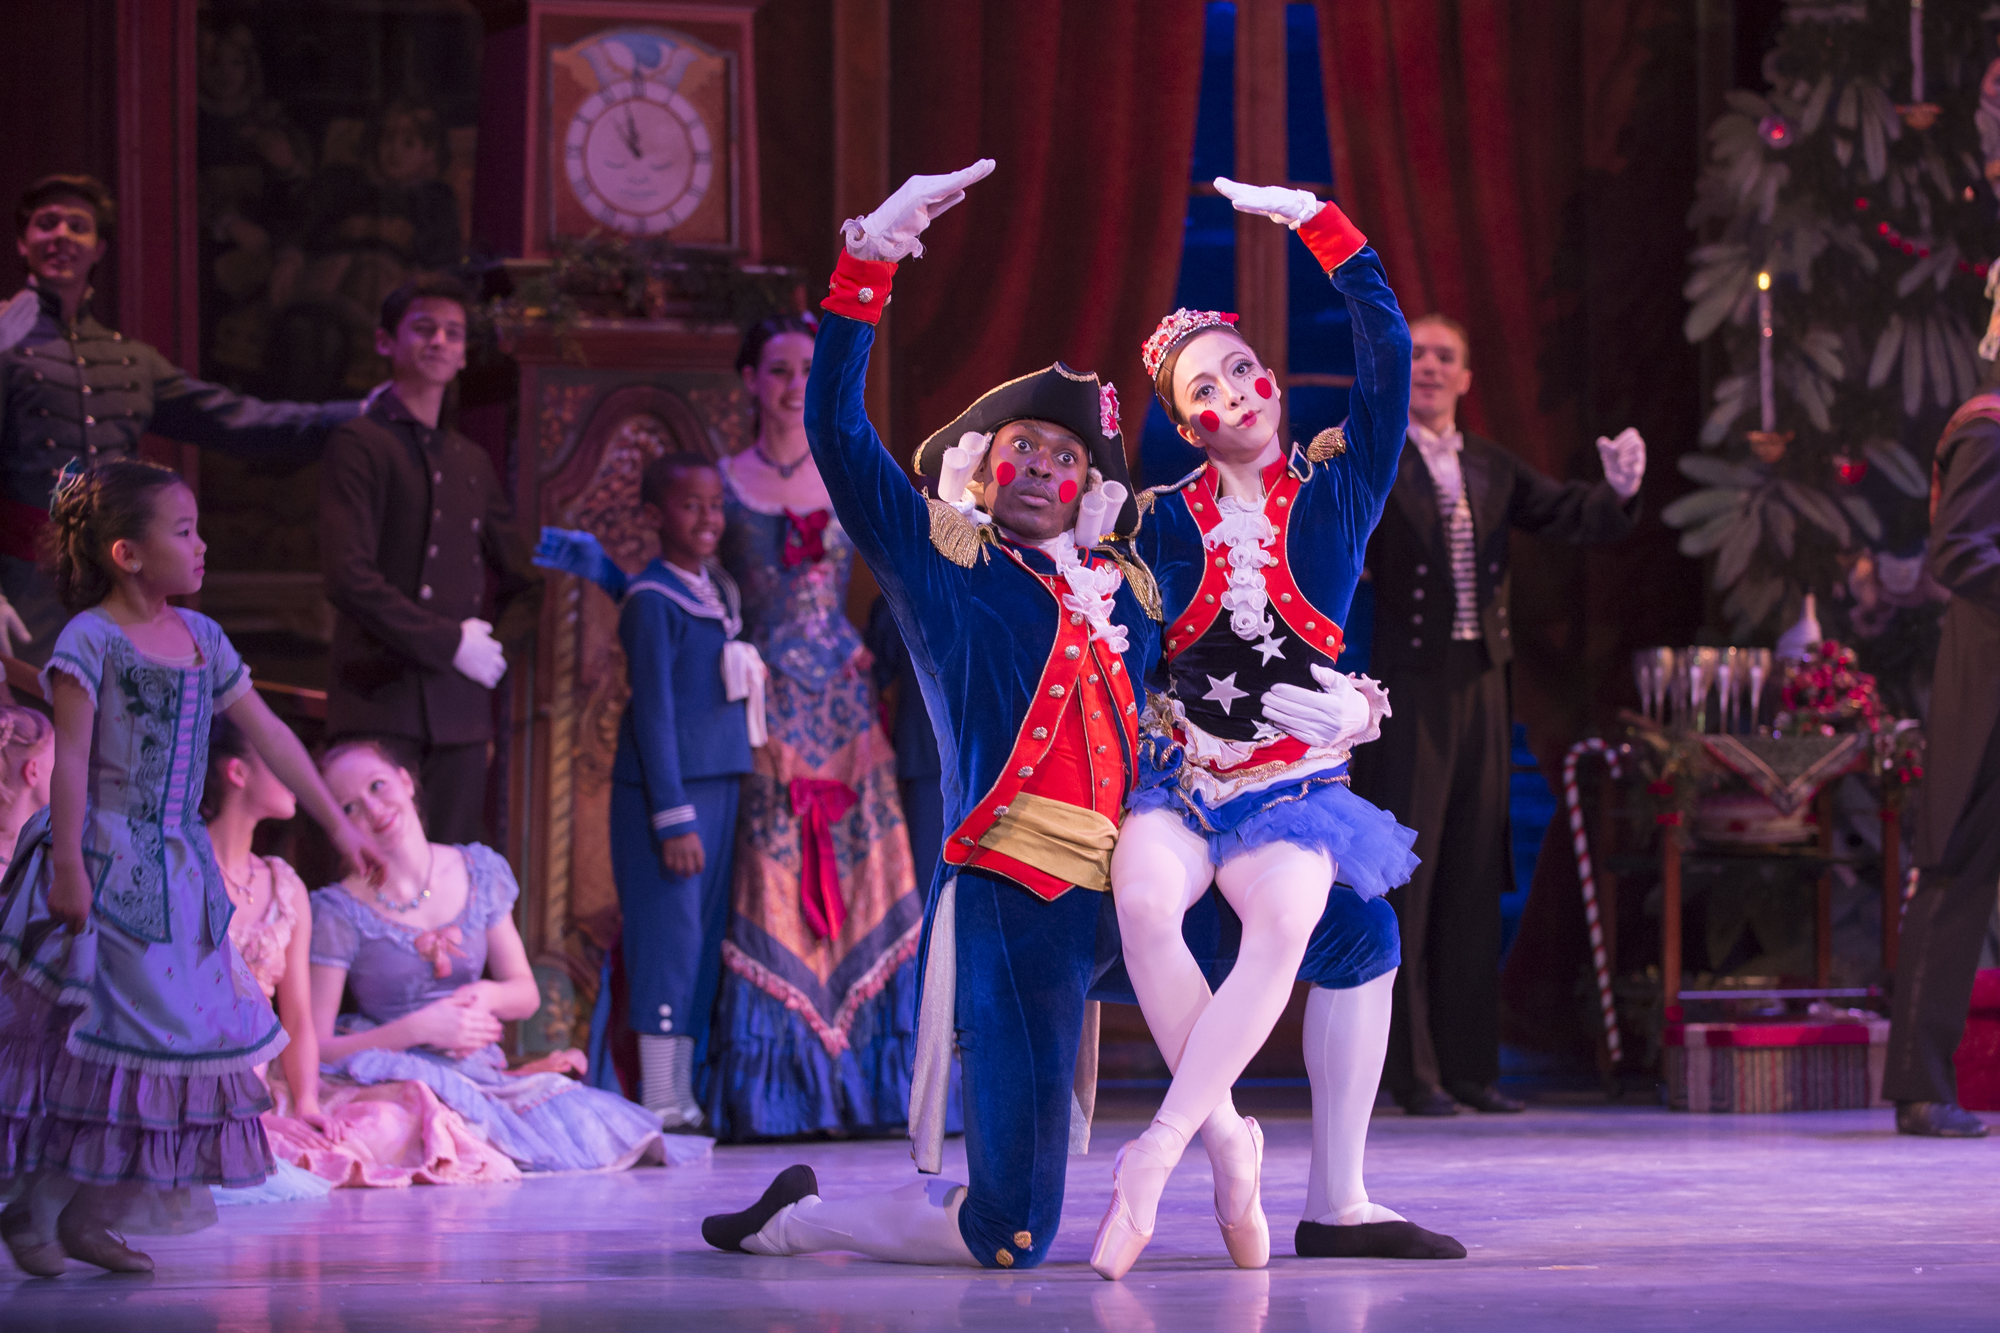 ‘Nutcracker’ ballet returns to Warner Theatre with D.C. twist WTOP